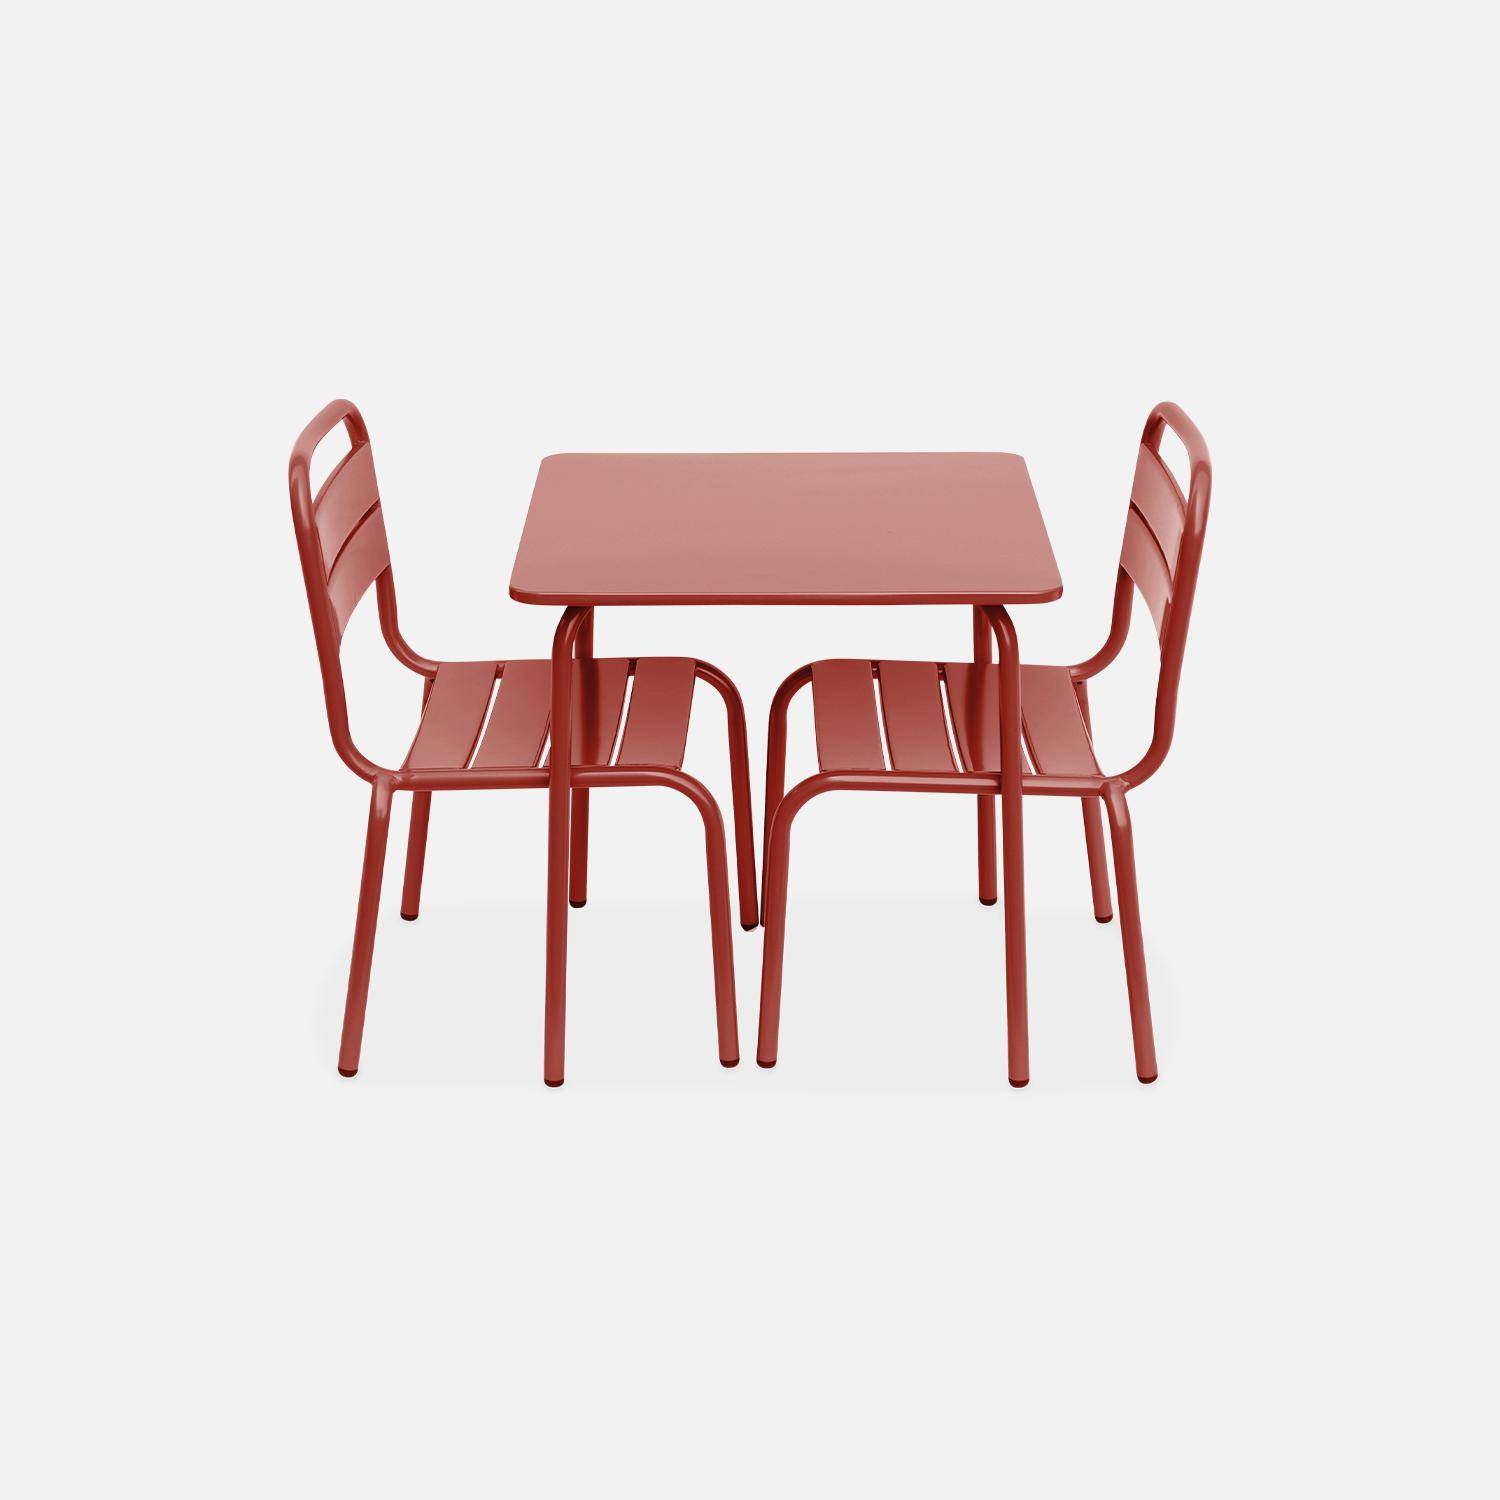 Tisch 48x48cm und 2 Stühle für Kinder, terrakotta, 48x48cm, für draußen verwendbar - Anna,sweeek,Photo4